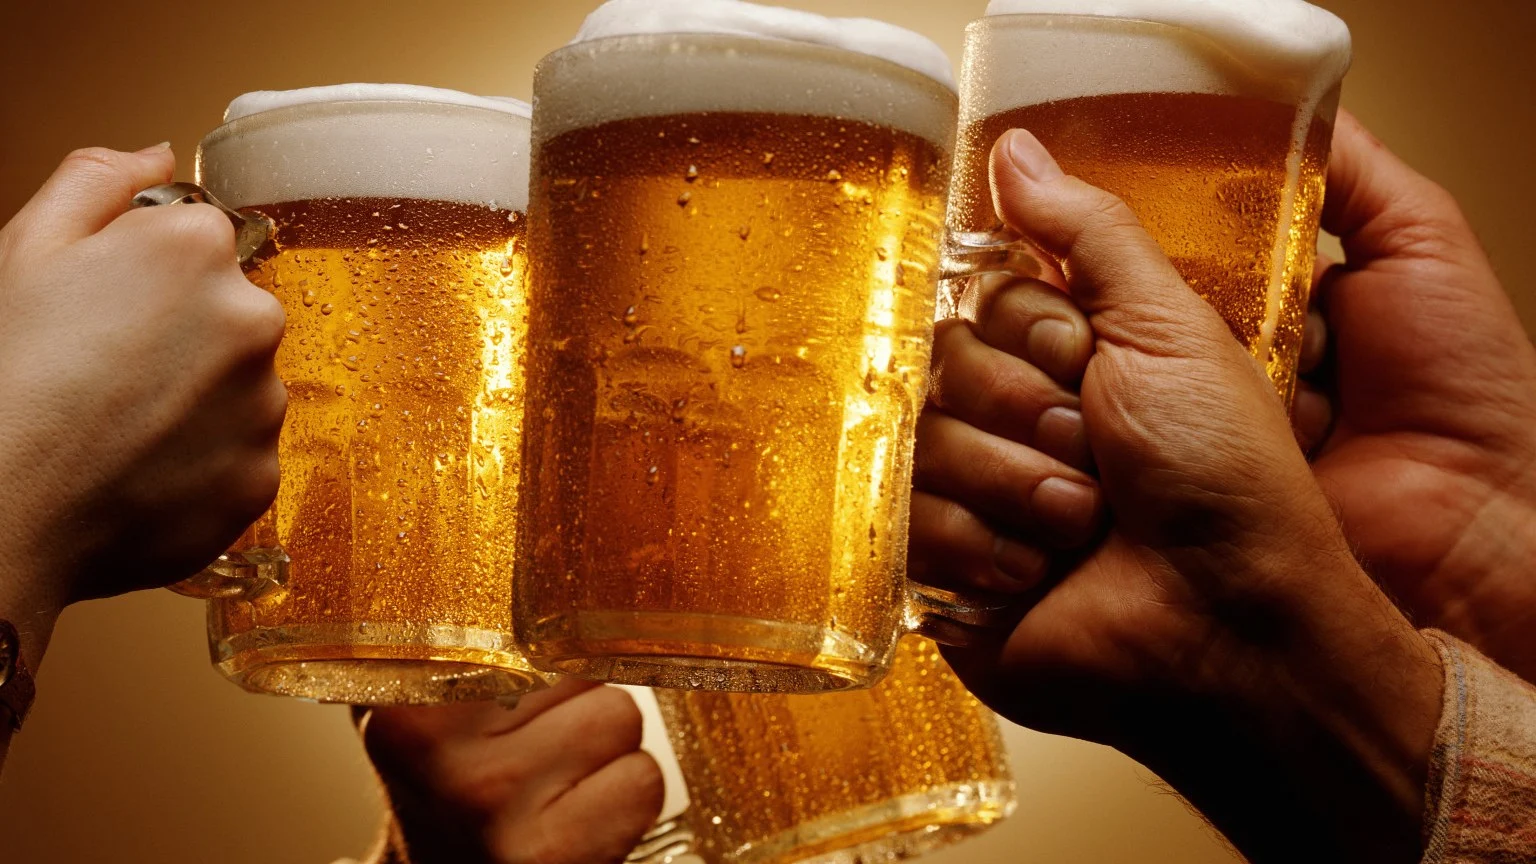 Οι 6 ομάδες ανθρώπων που δεν πρέπει ποτέ να καταναλώσουν μπύρα